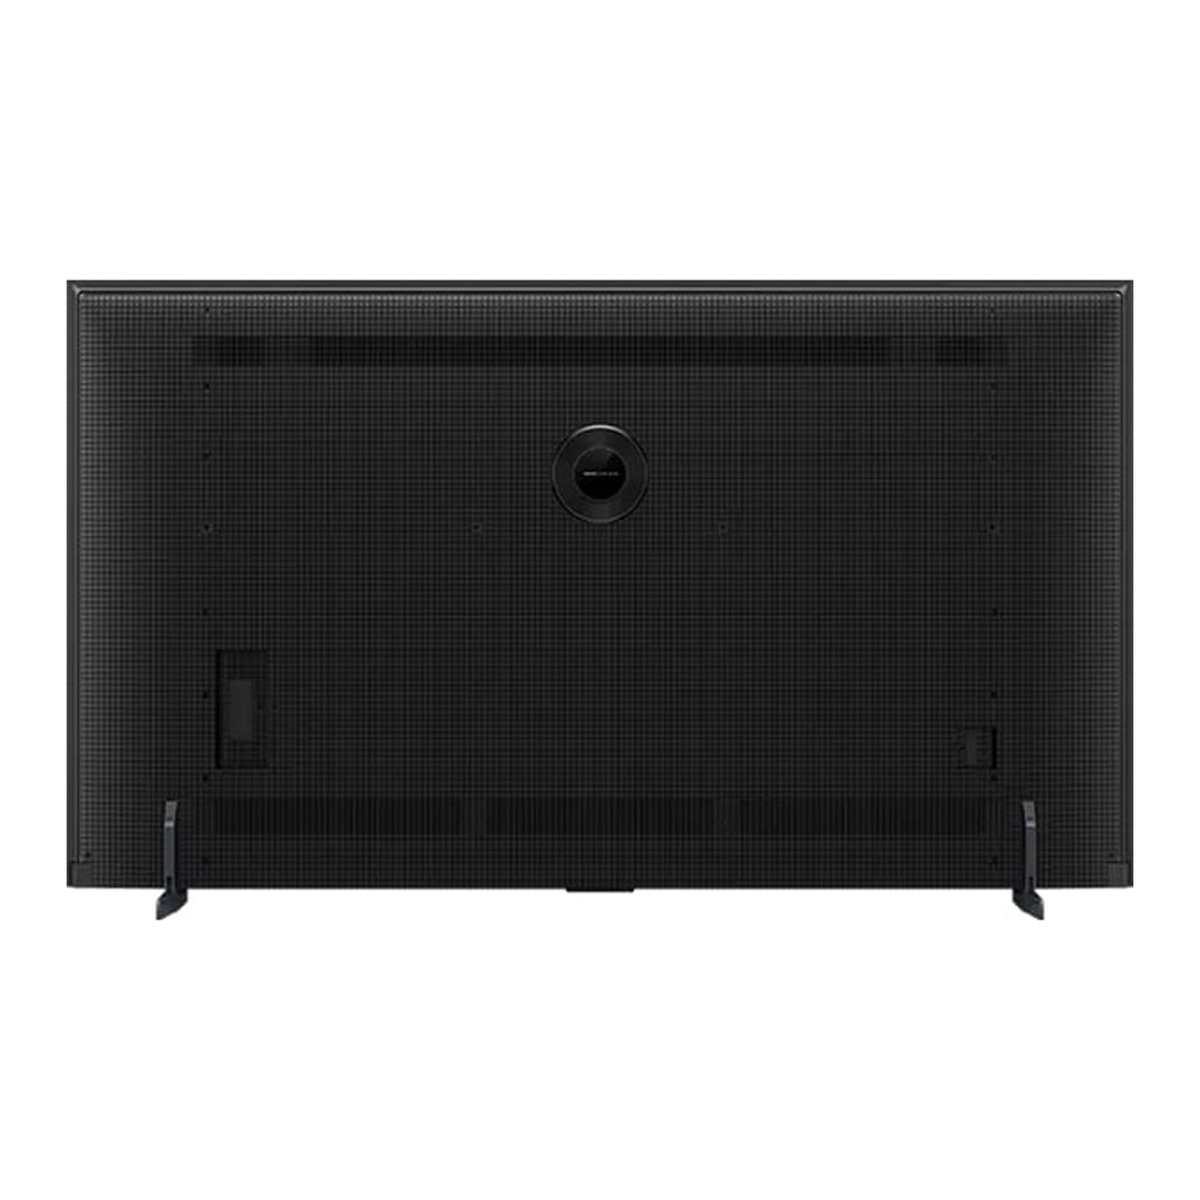 TCL 75 inches 4K Google Smart QD Series Mini LED TV, 75C755